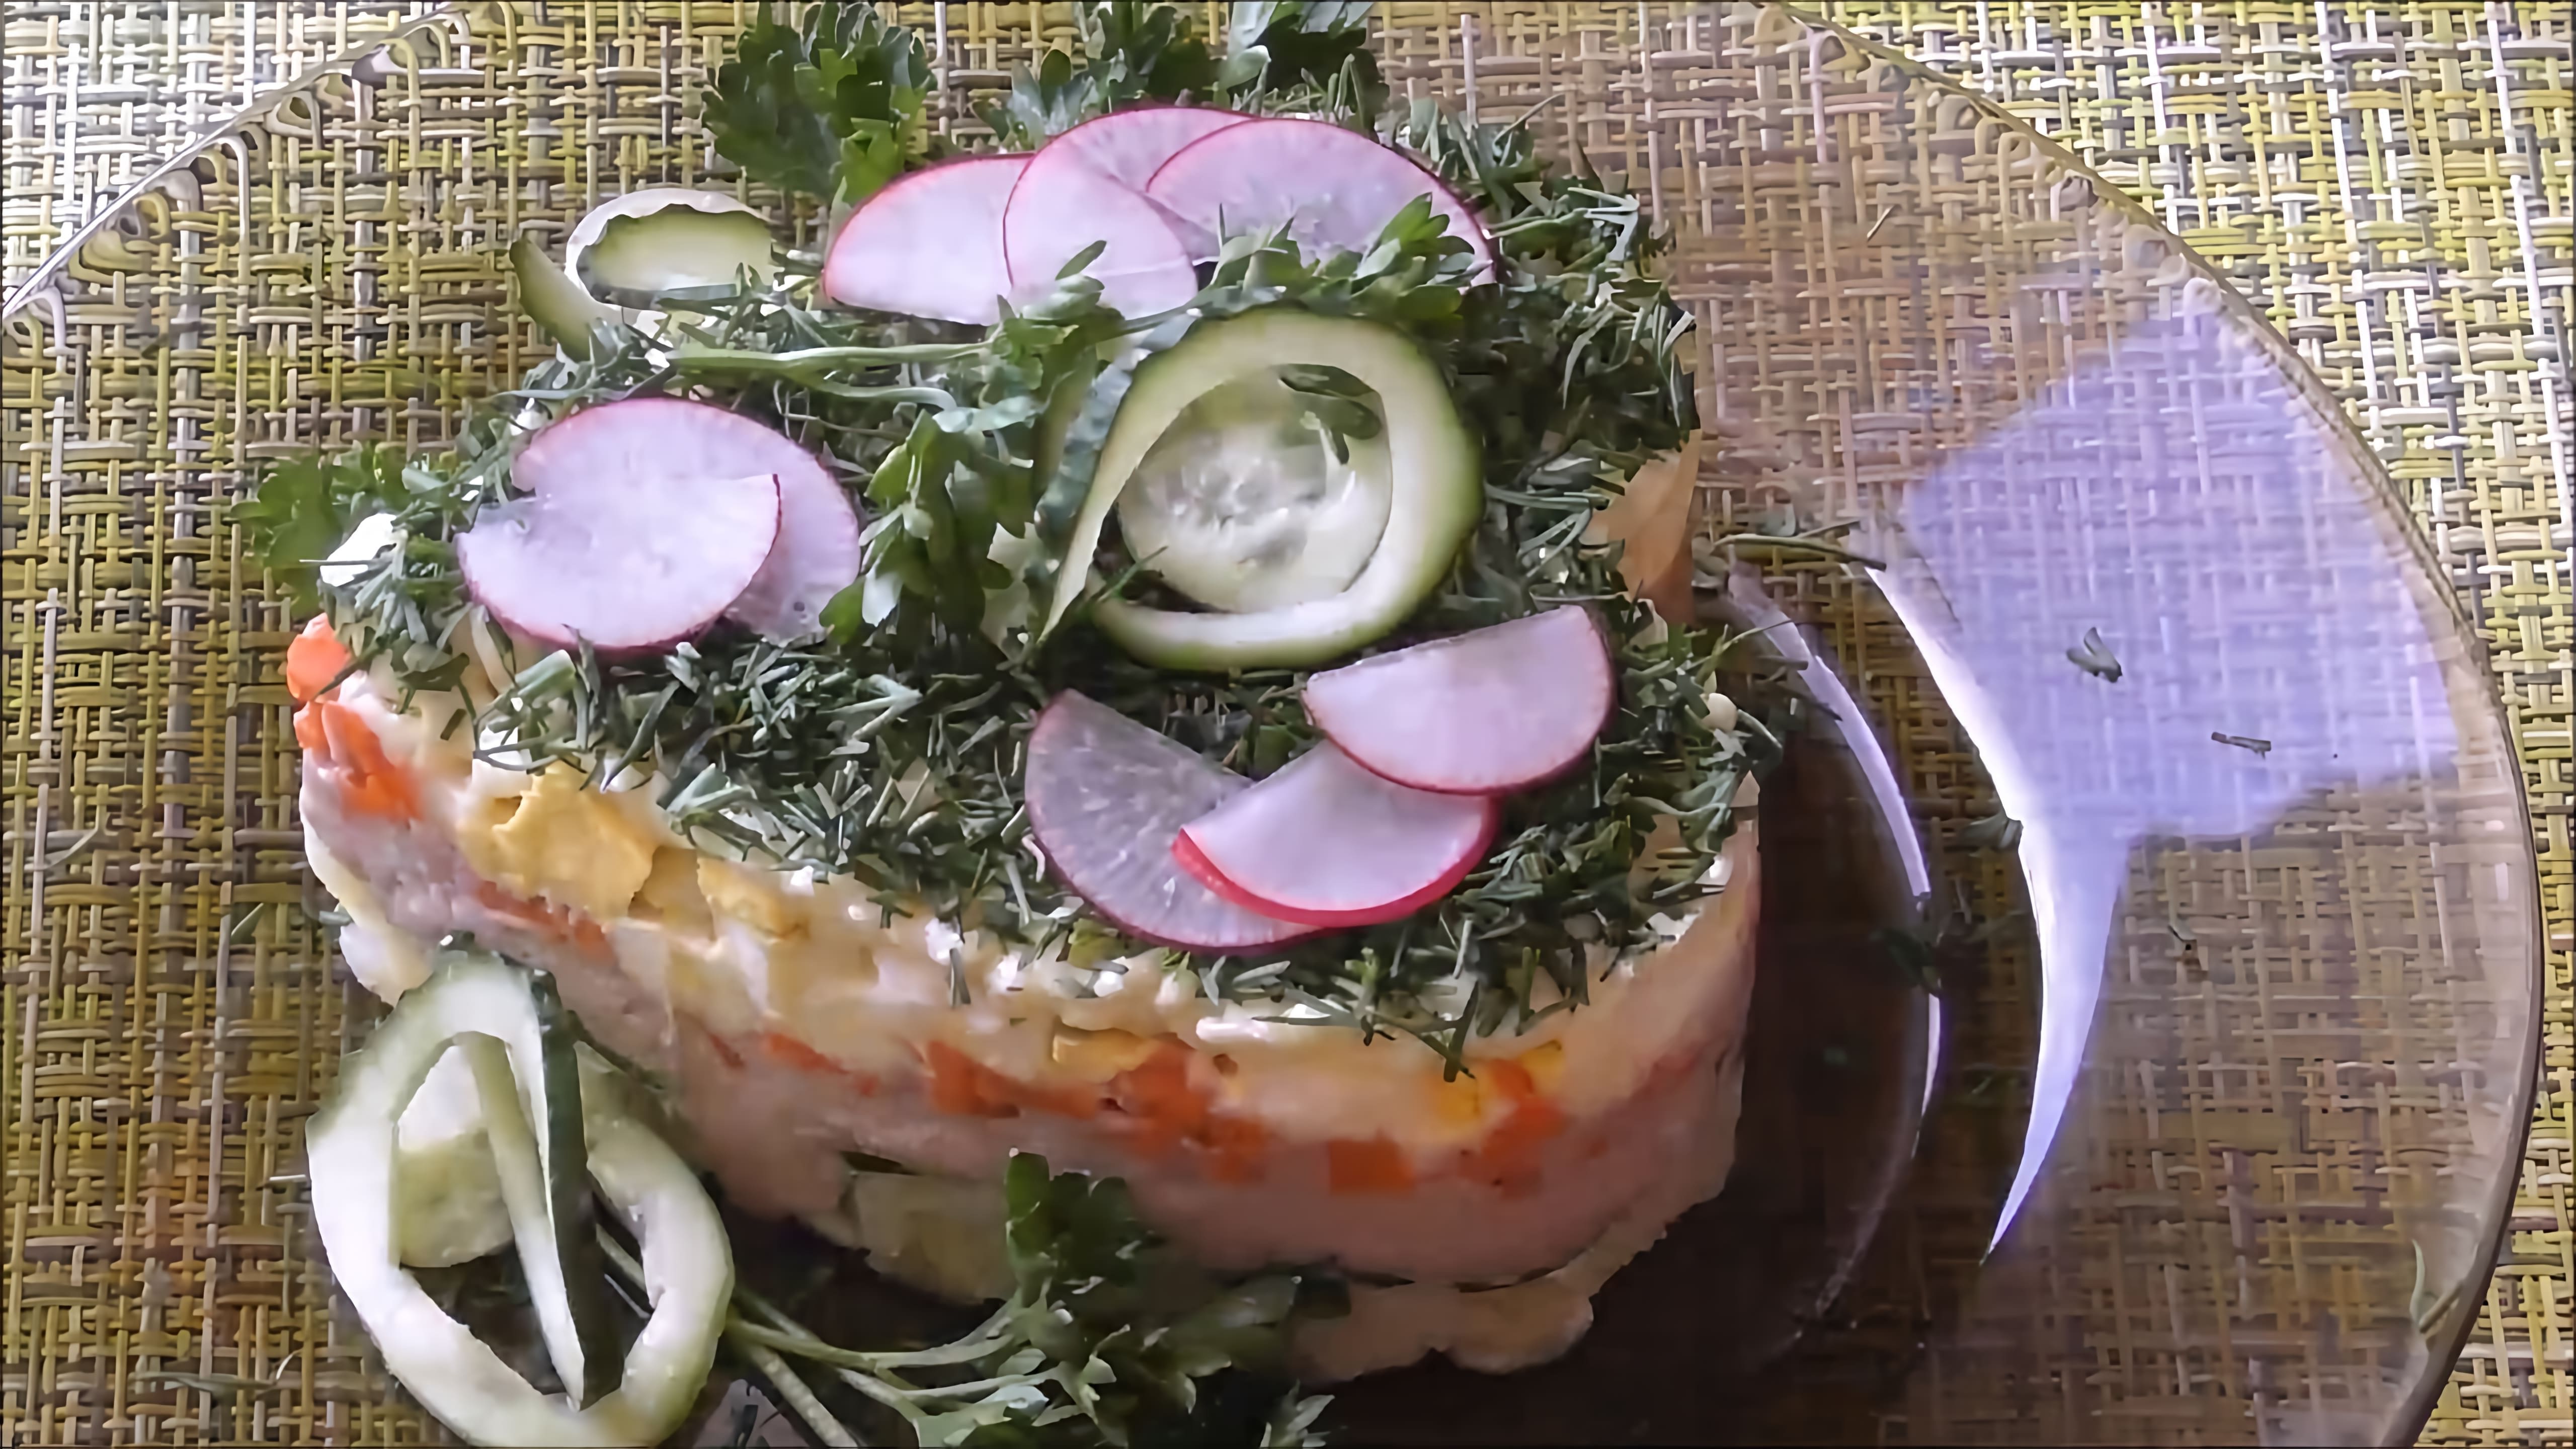 Салат из печени минтая "Быстрый" - это вкусное и быстрое блюдо, которое можно приготовить за несколько минут